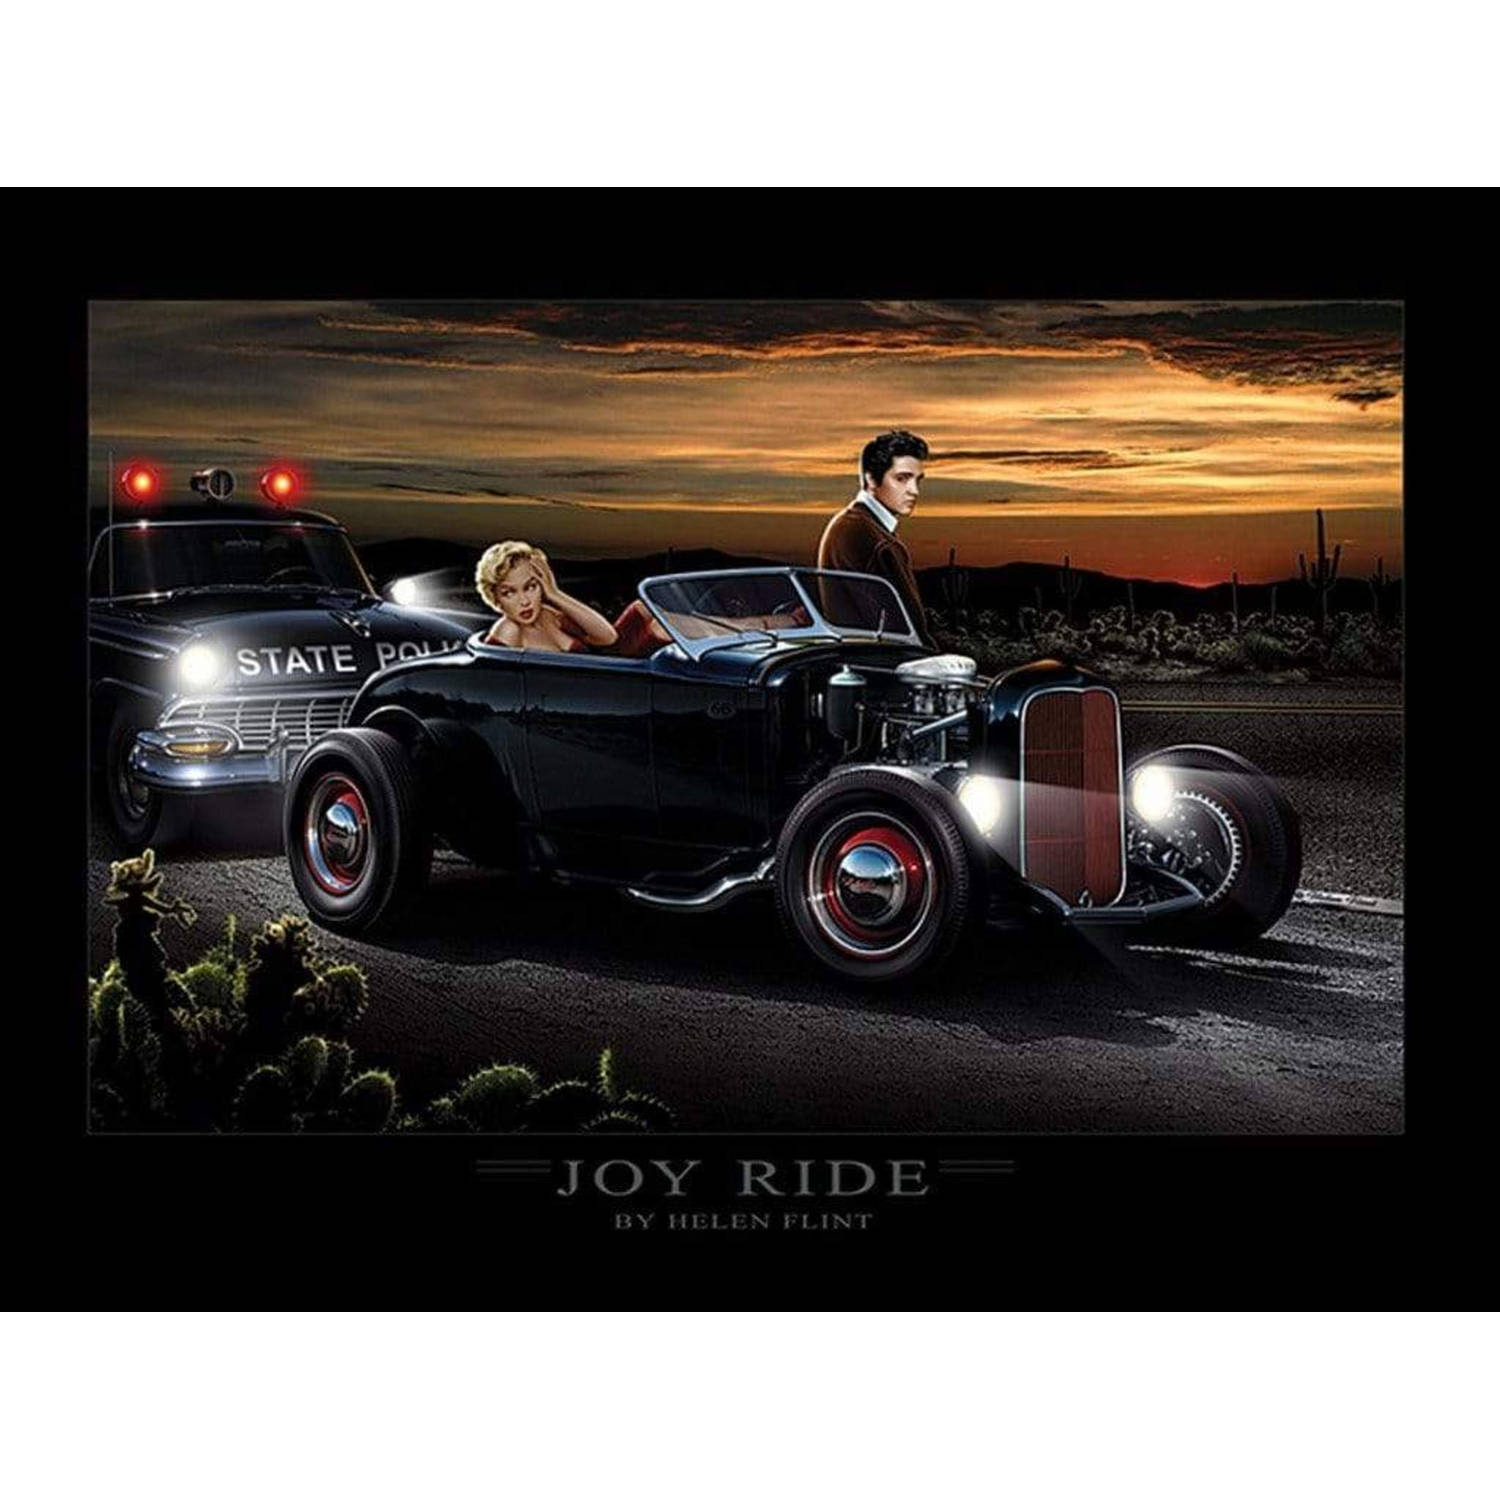 Kunstdruk Joy Ride Helen Flint 80x60cm